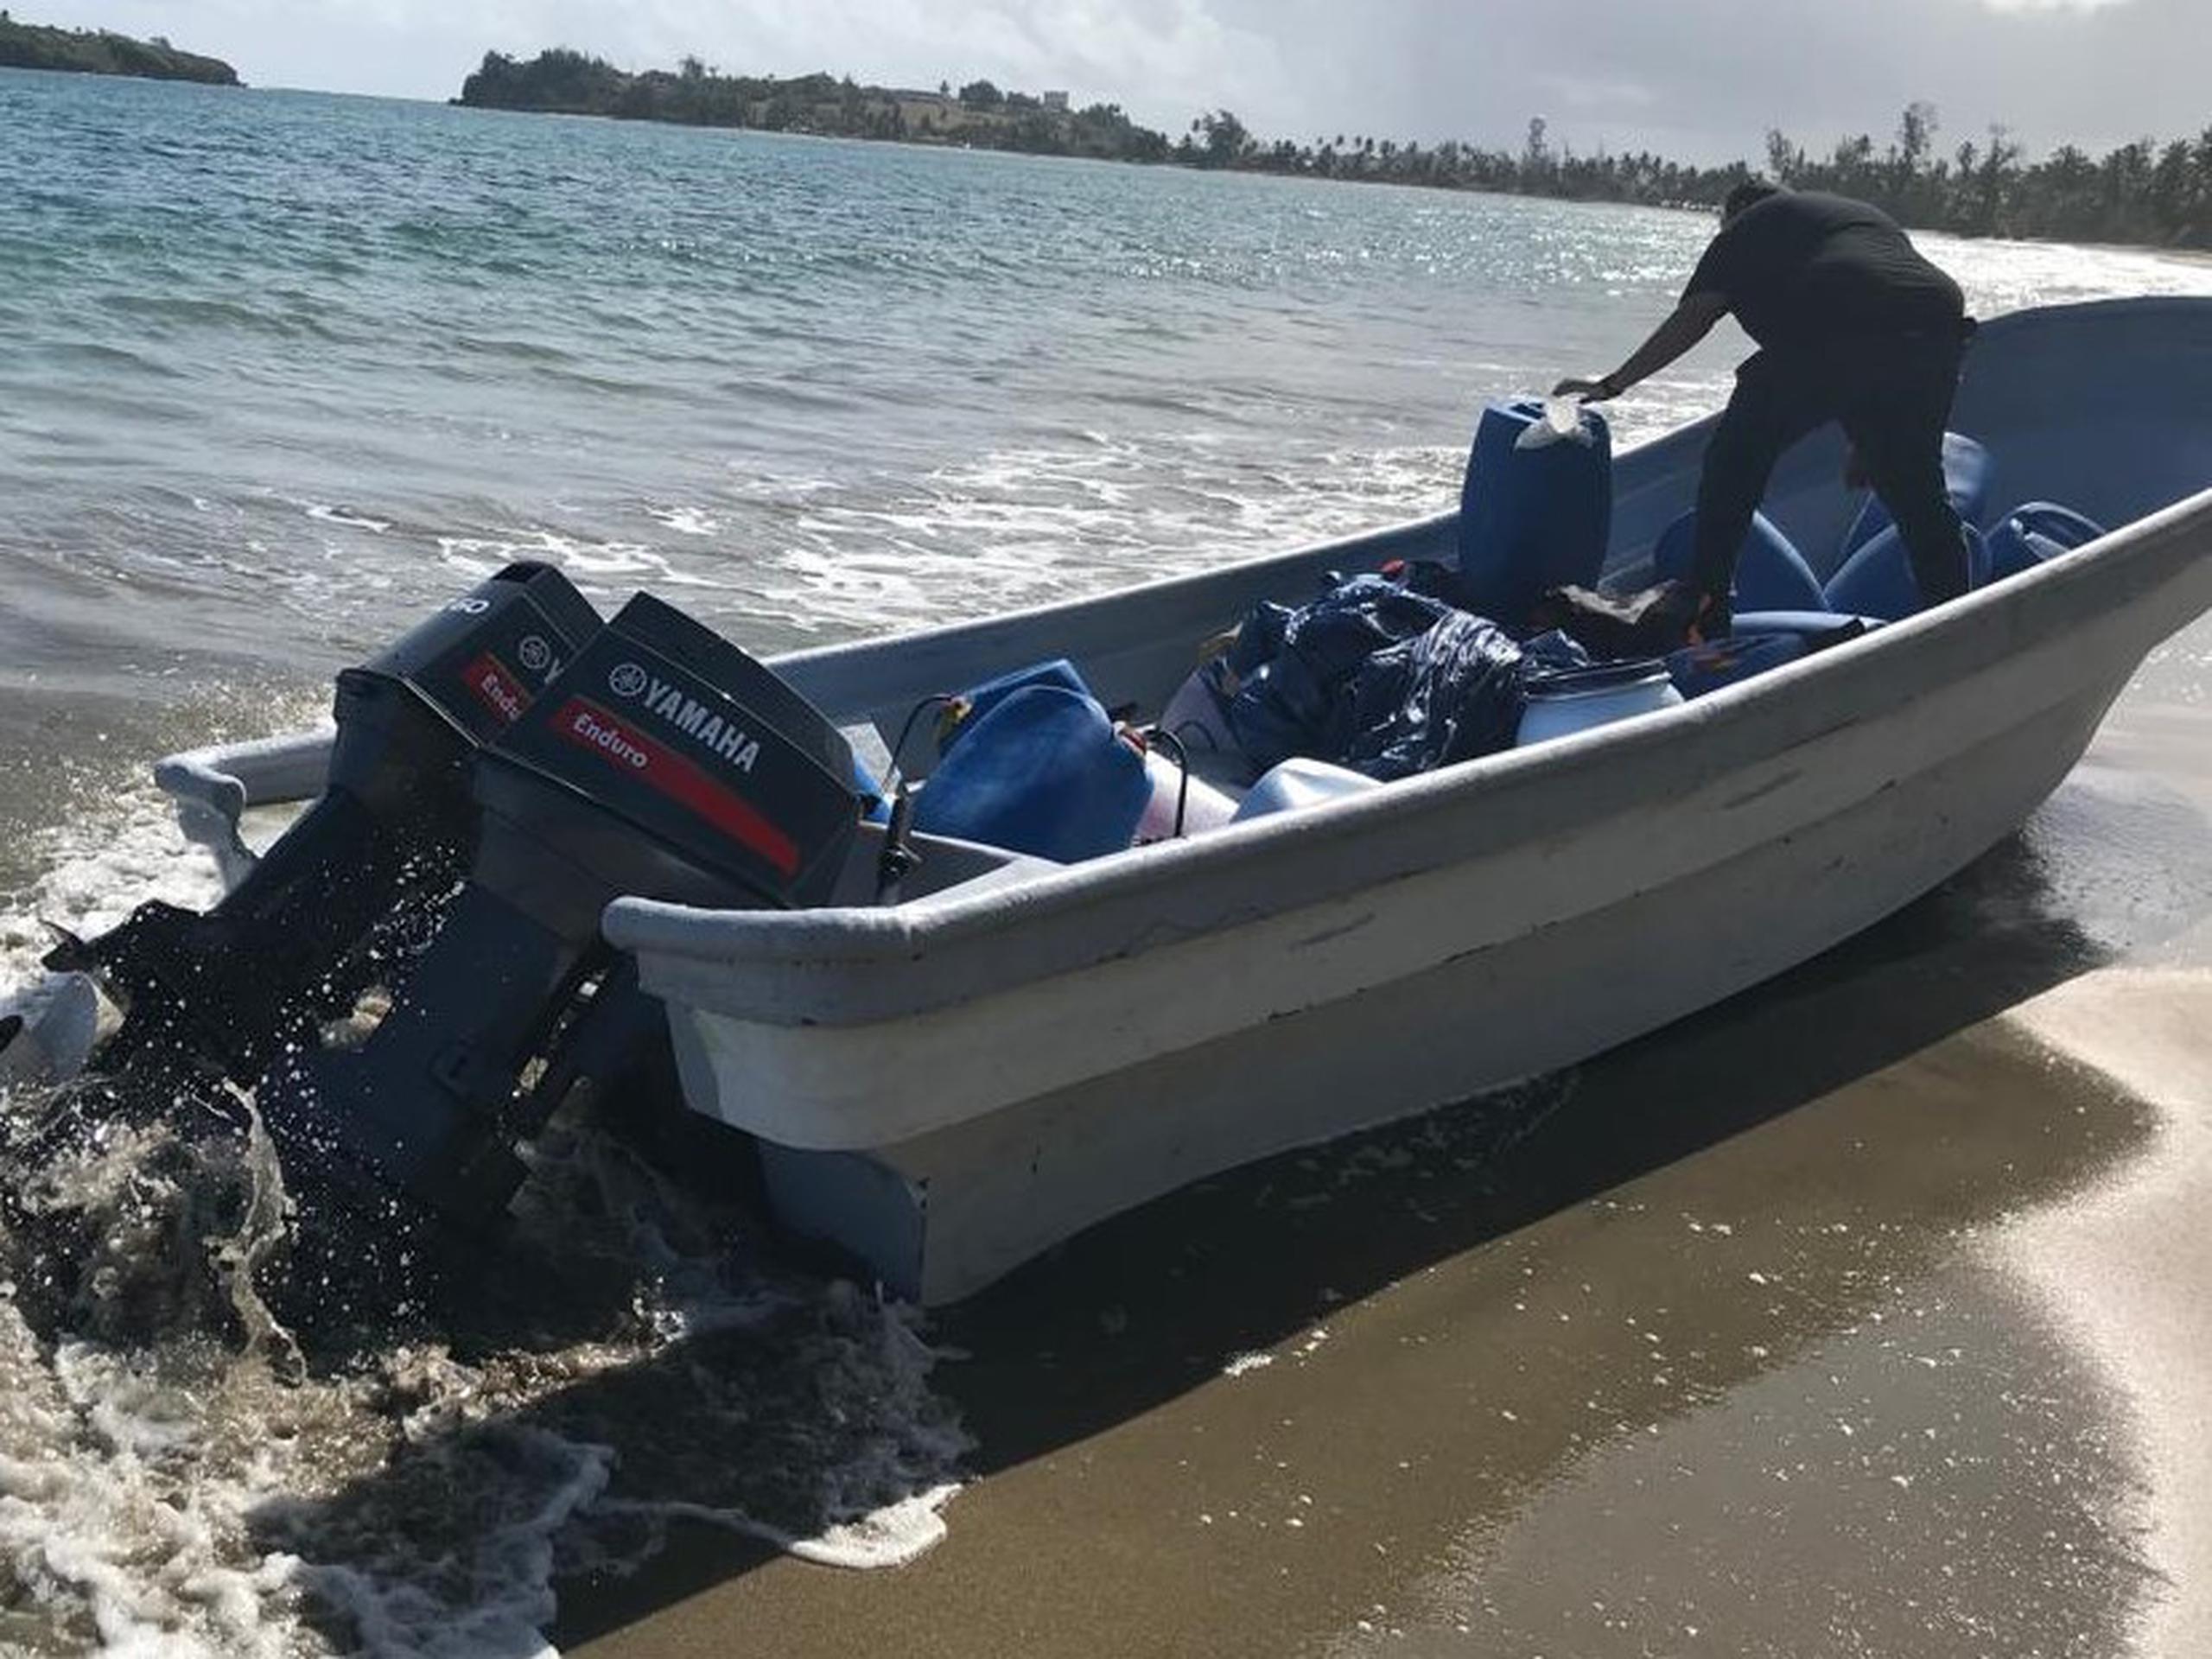 La lancha de 22 pies de eslora fue ocupada a orillas de la playa en el balneario de Punta Salinas, en Toa Baja.